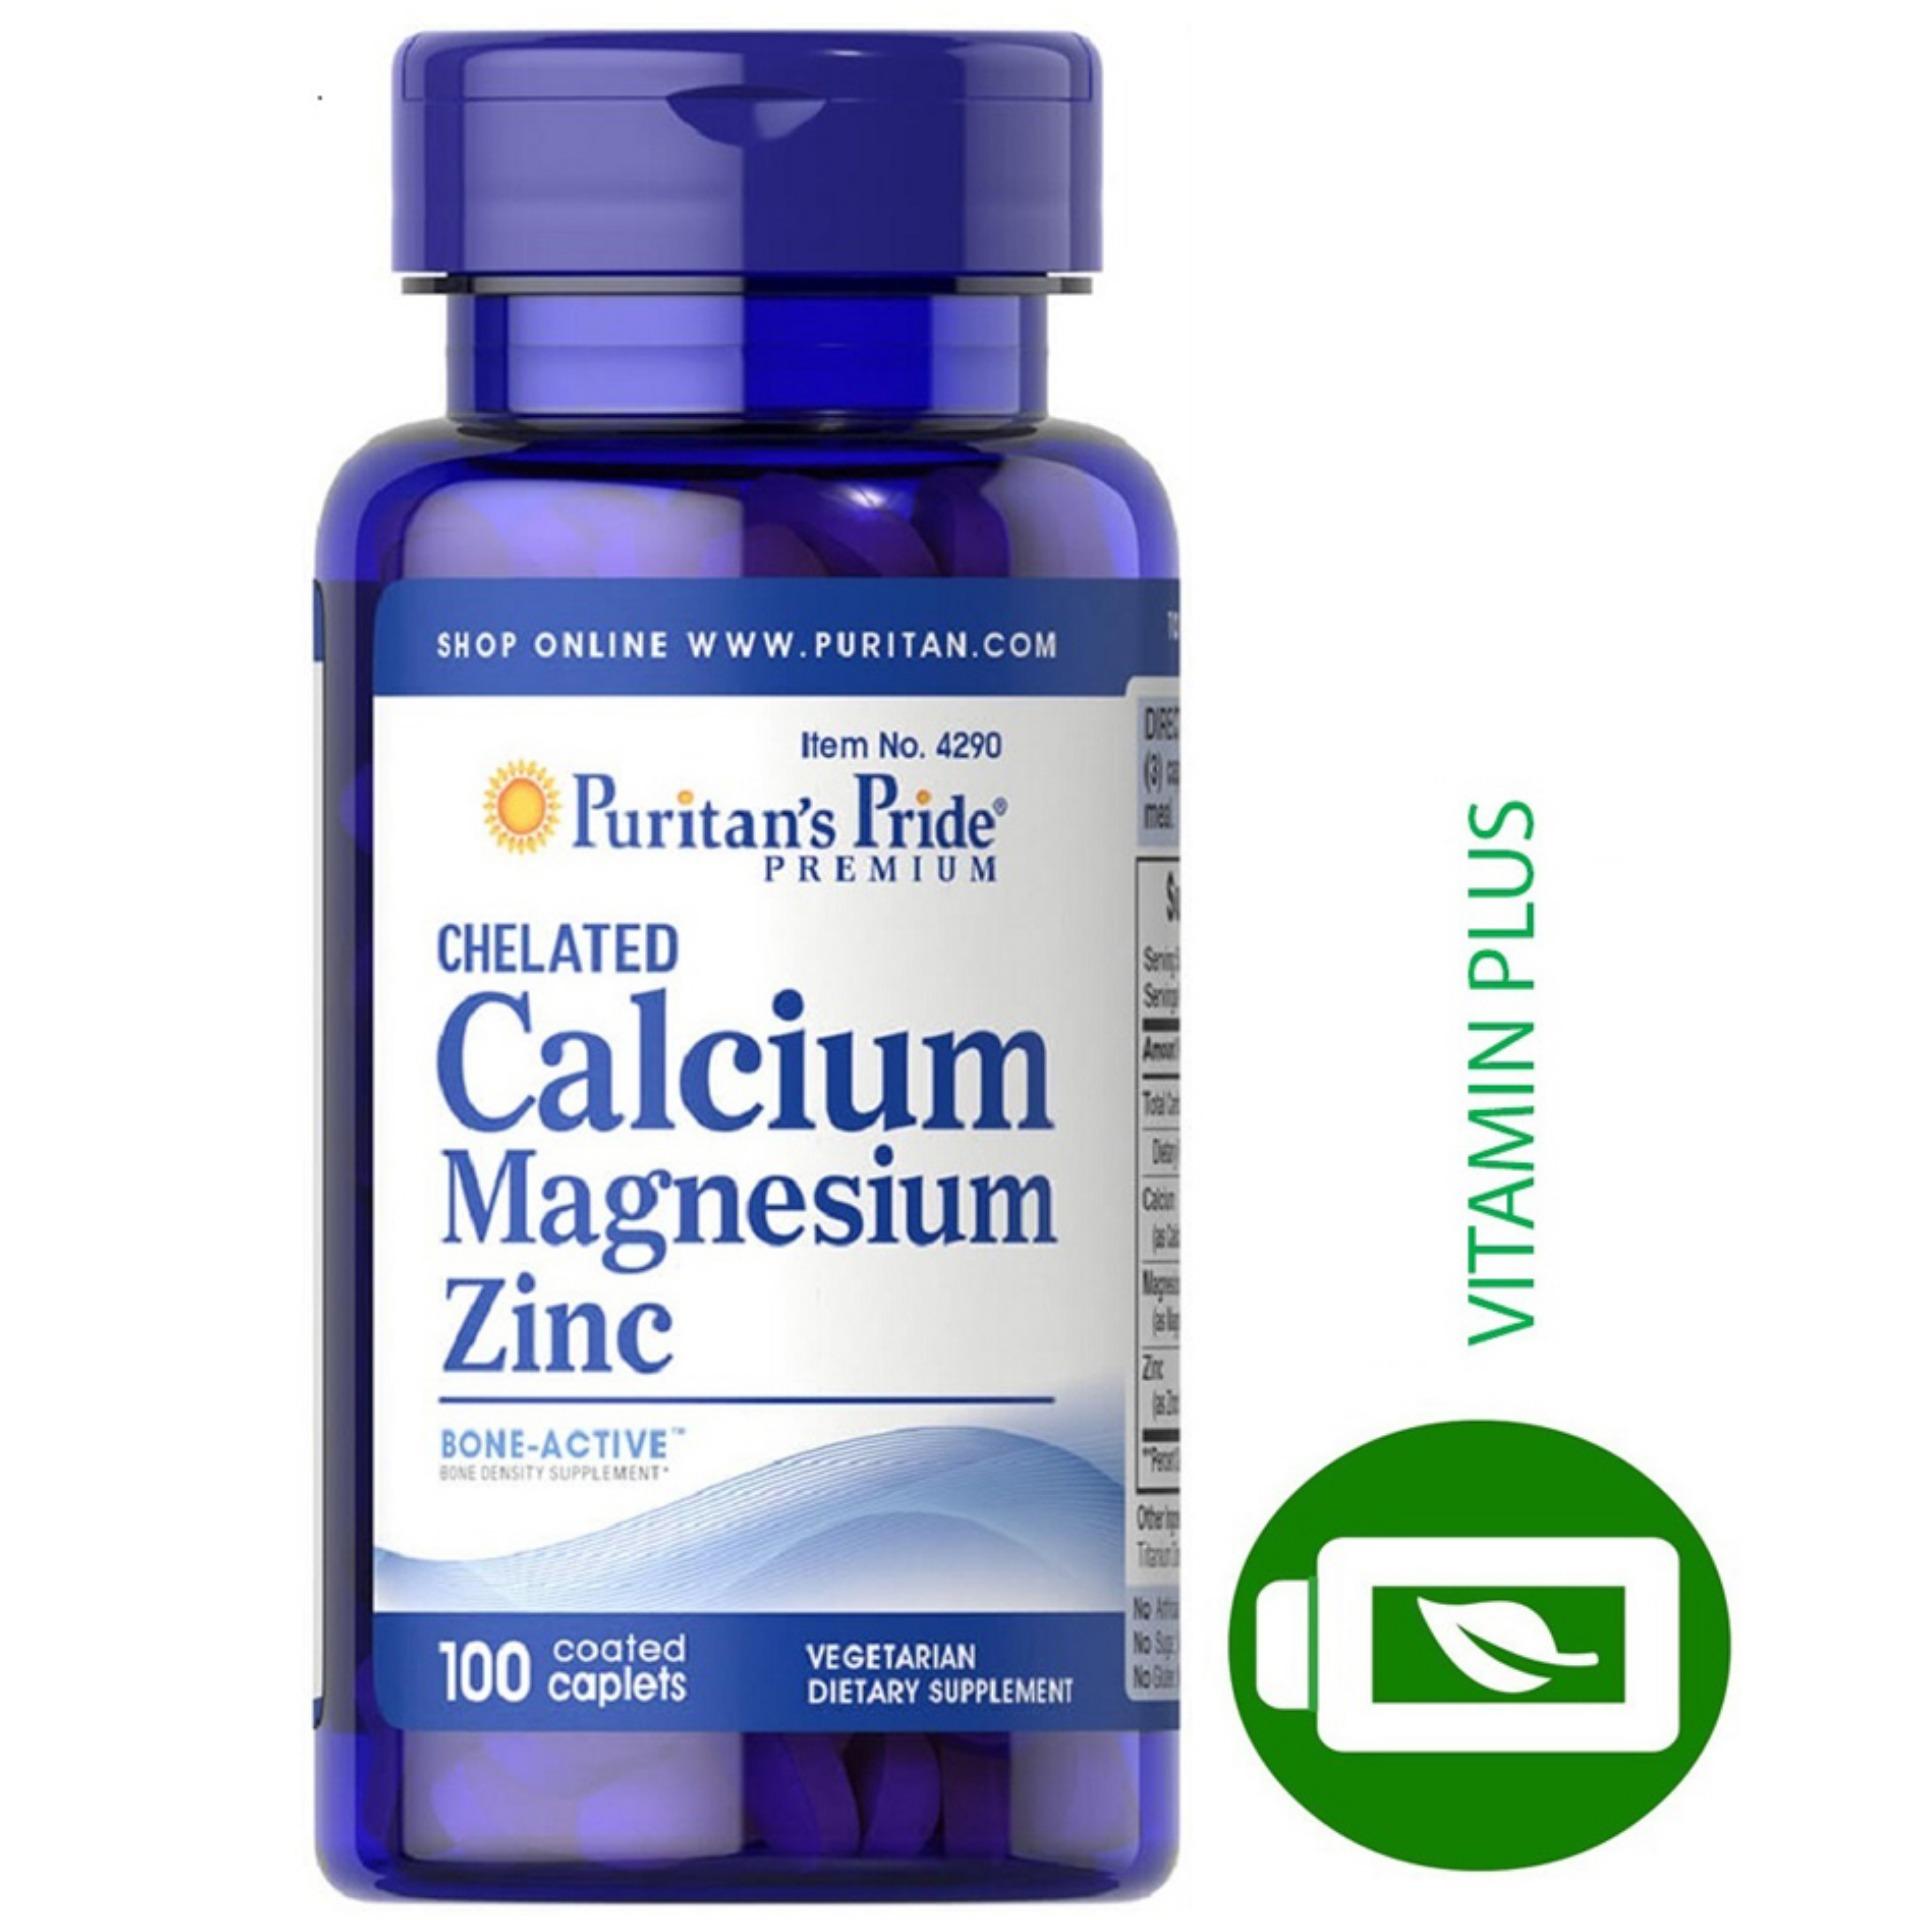 Viên uống cải thiện chiều cao hỗ trợ xương Puritans Pride Chelated Calcium Magnesium & Zinc 100 viên